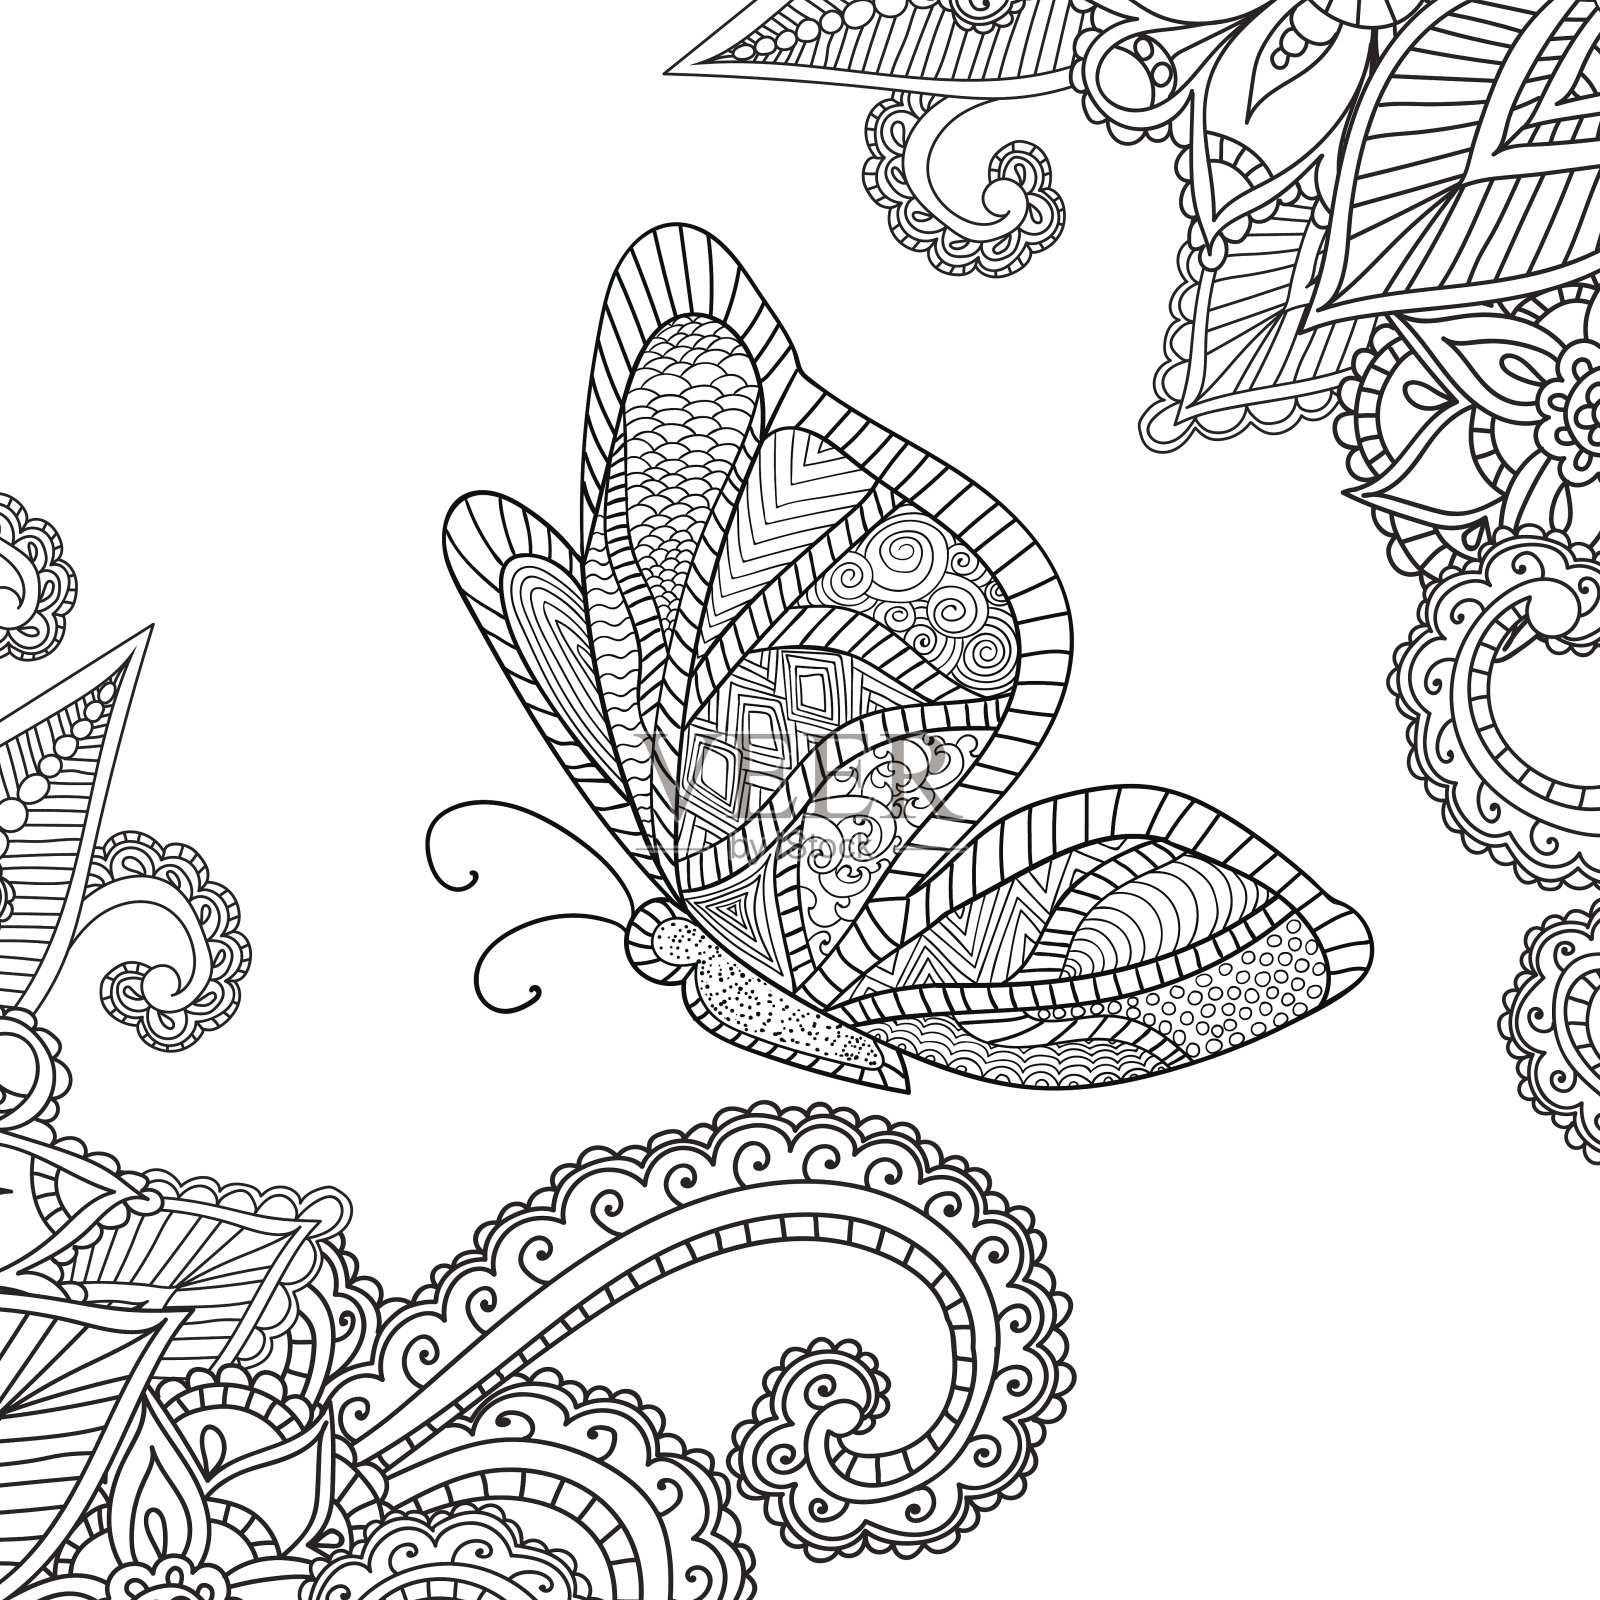 为成人涂色页面。指甲花图案:抽象的花卉元素插画图片素材